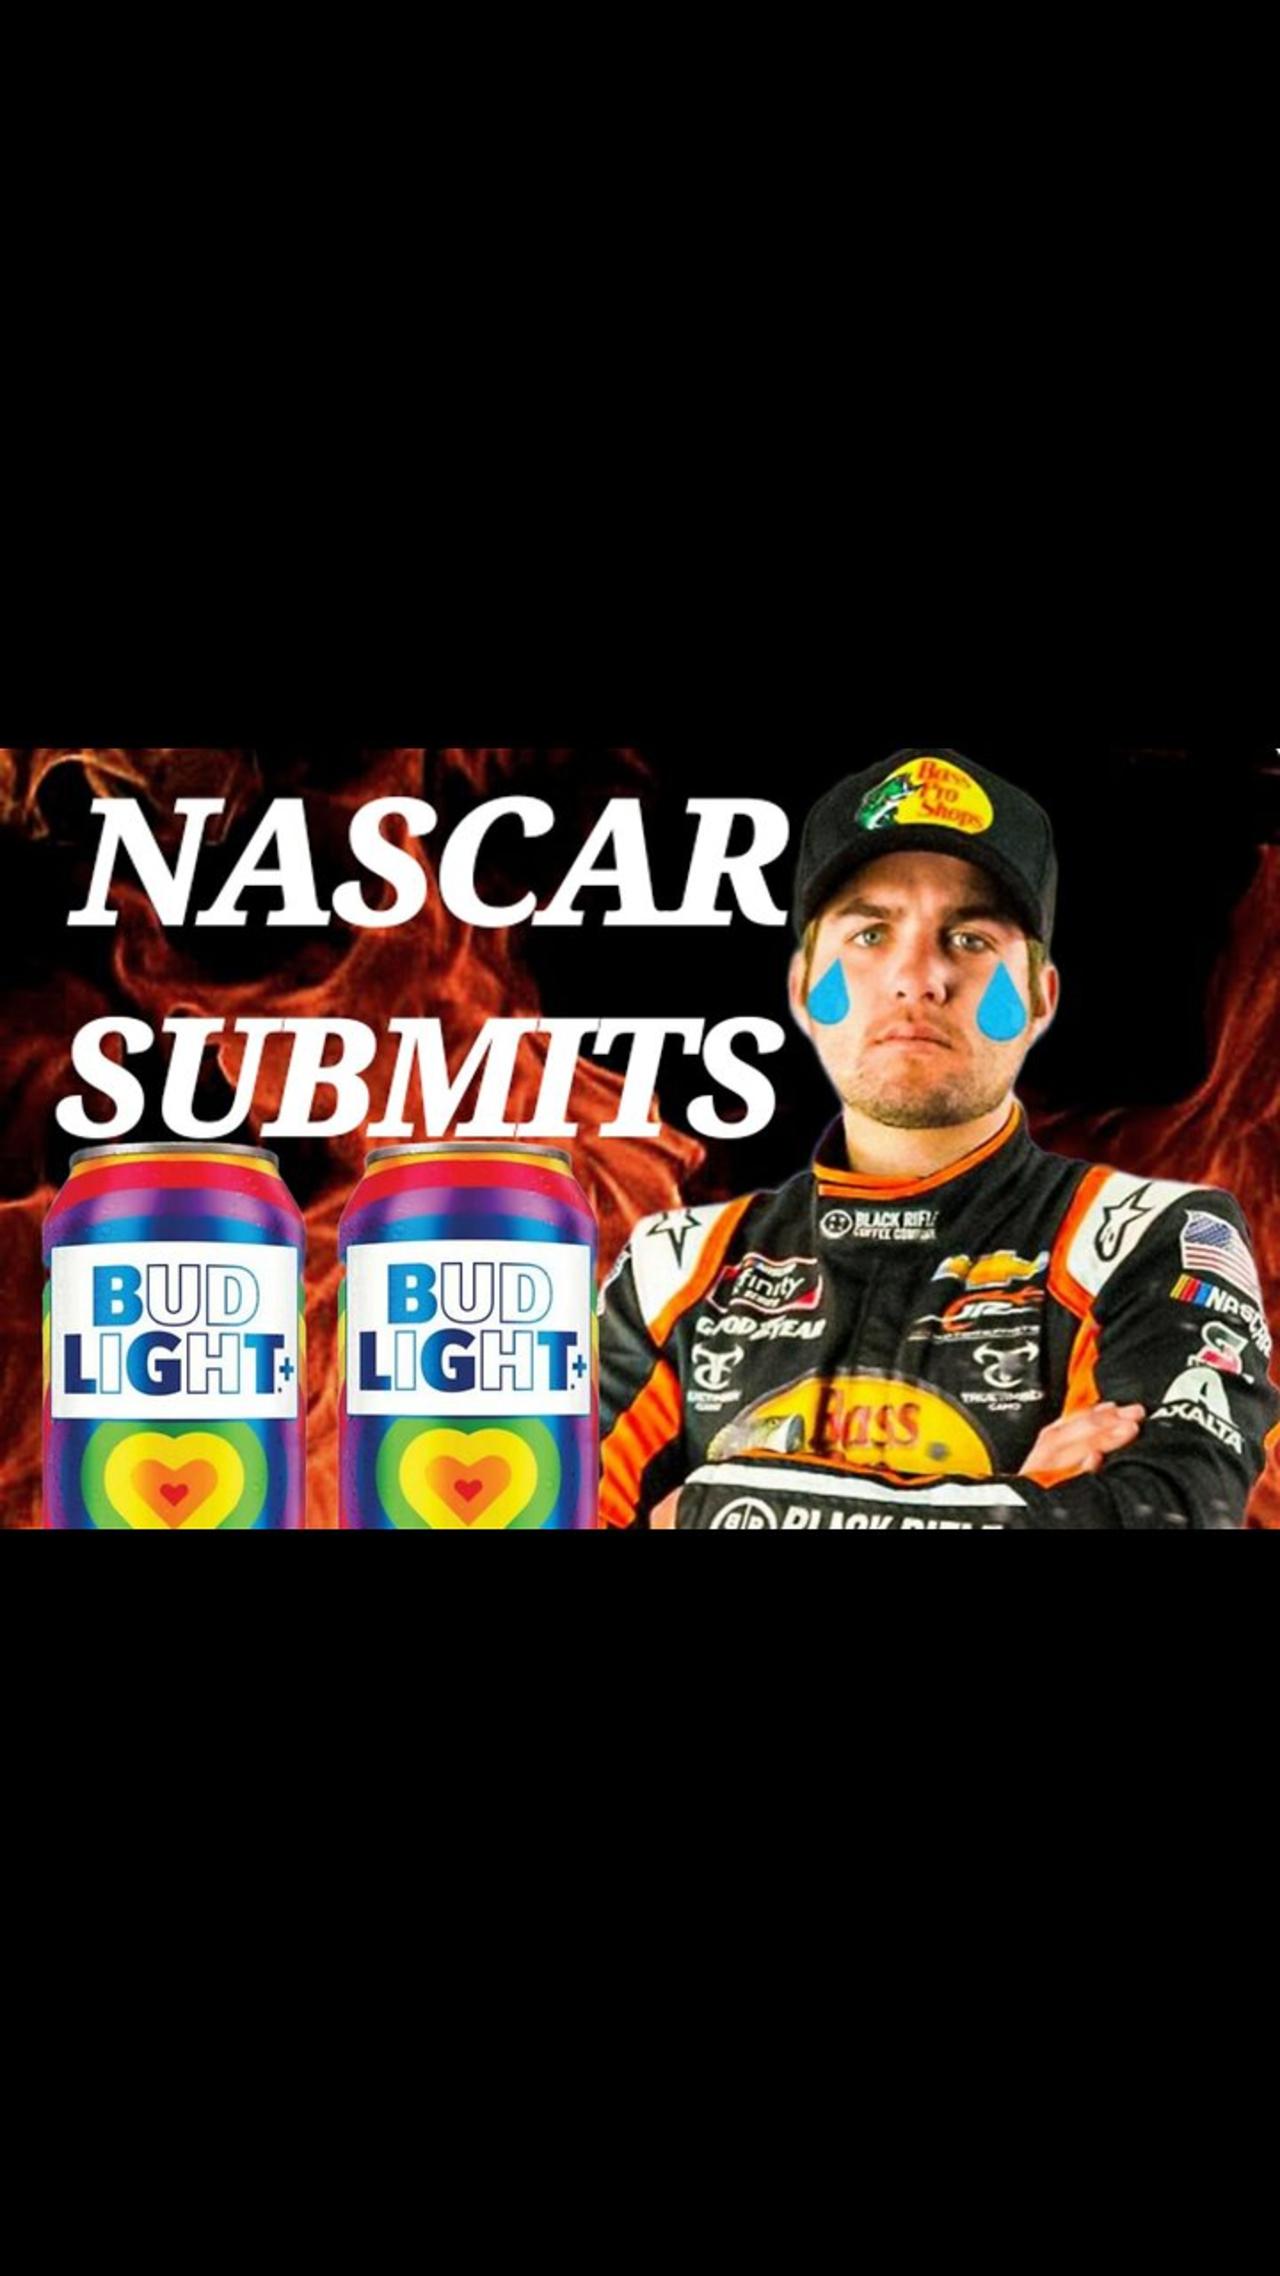 NASCAR’s Noah Gragson SUSPENDED after  liking George Floyd meme